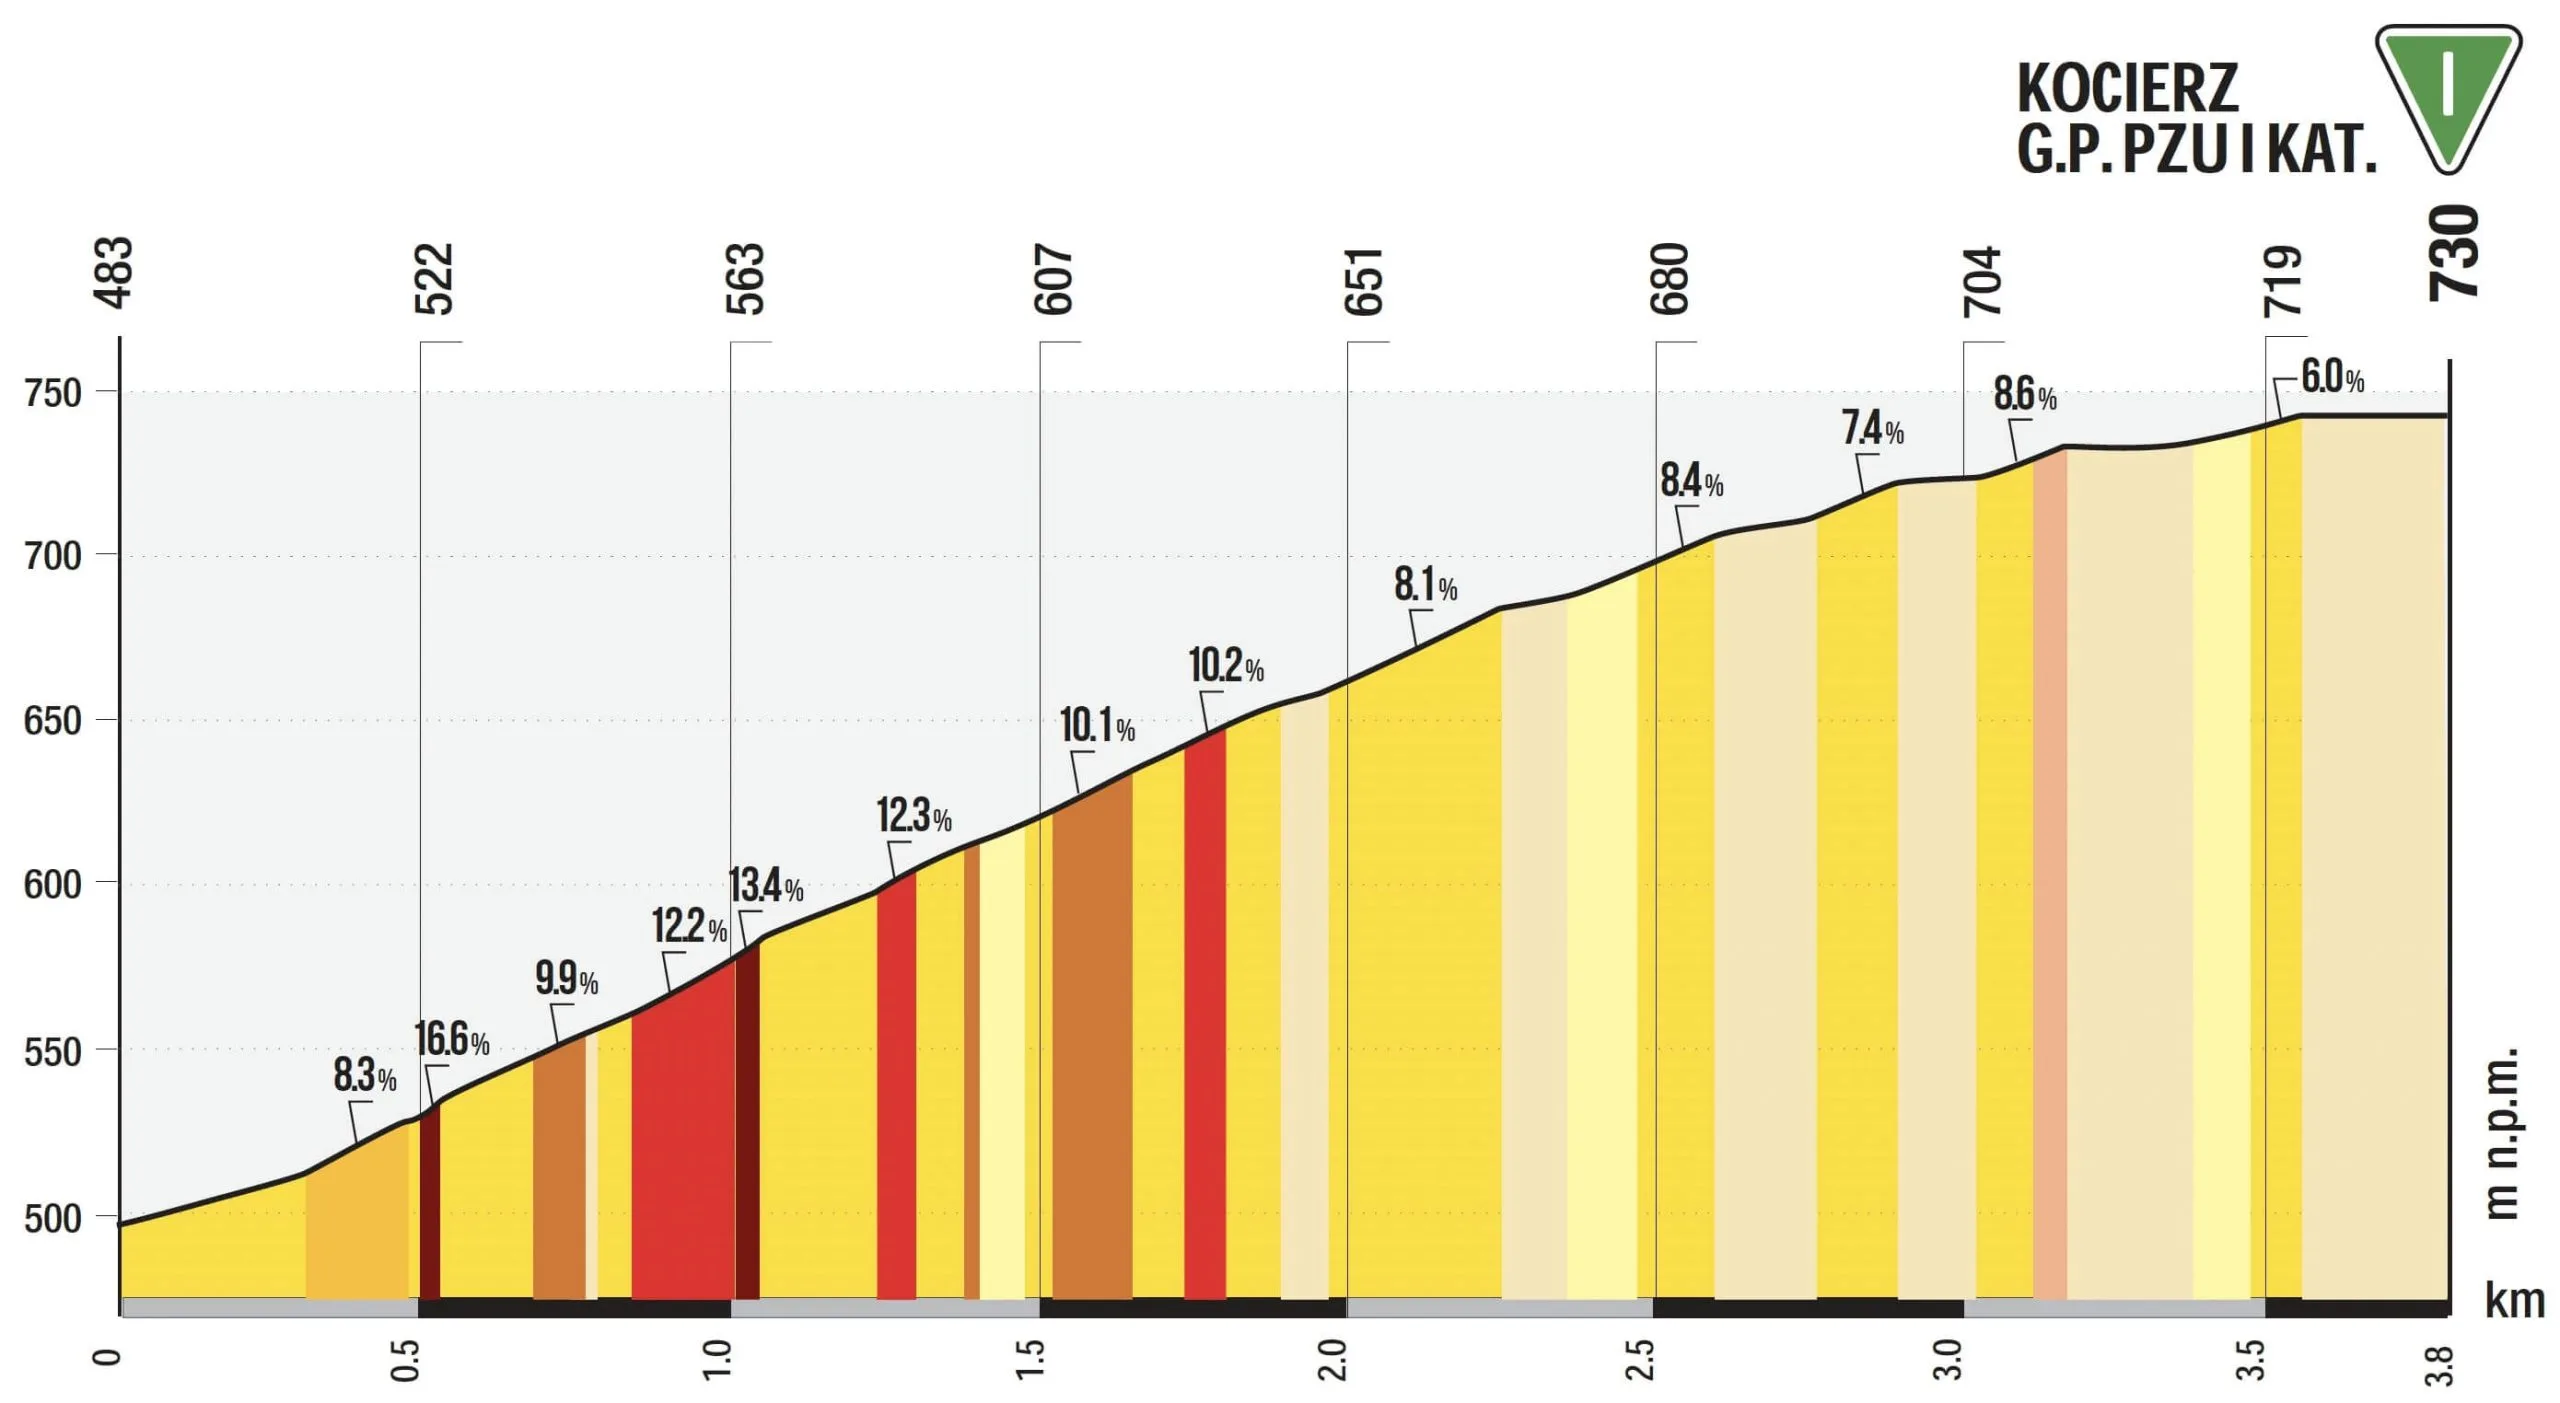 Kocierz - first-category climb Tour de Pologne